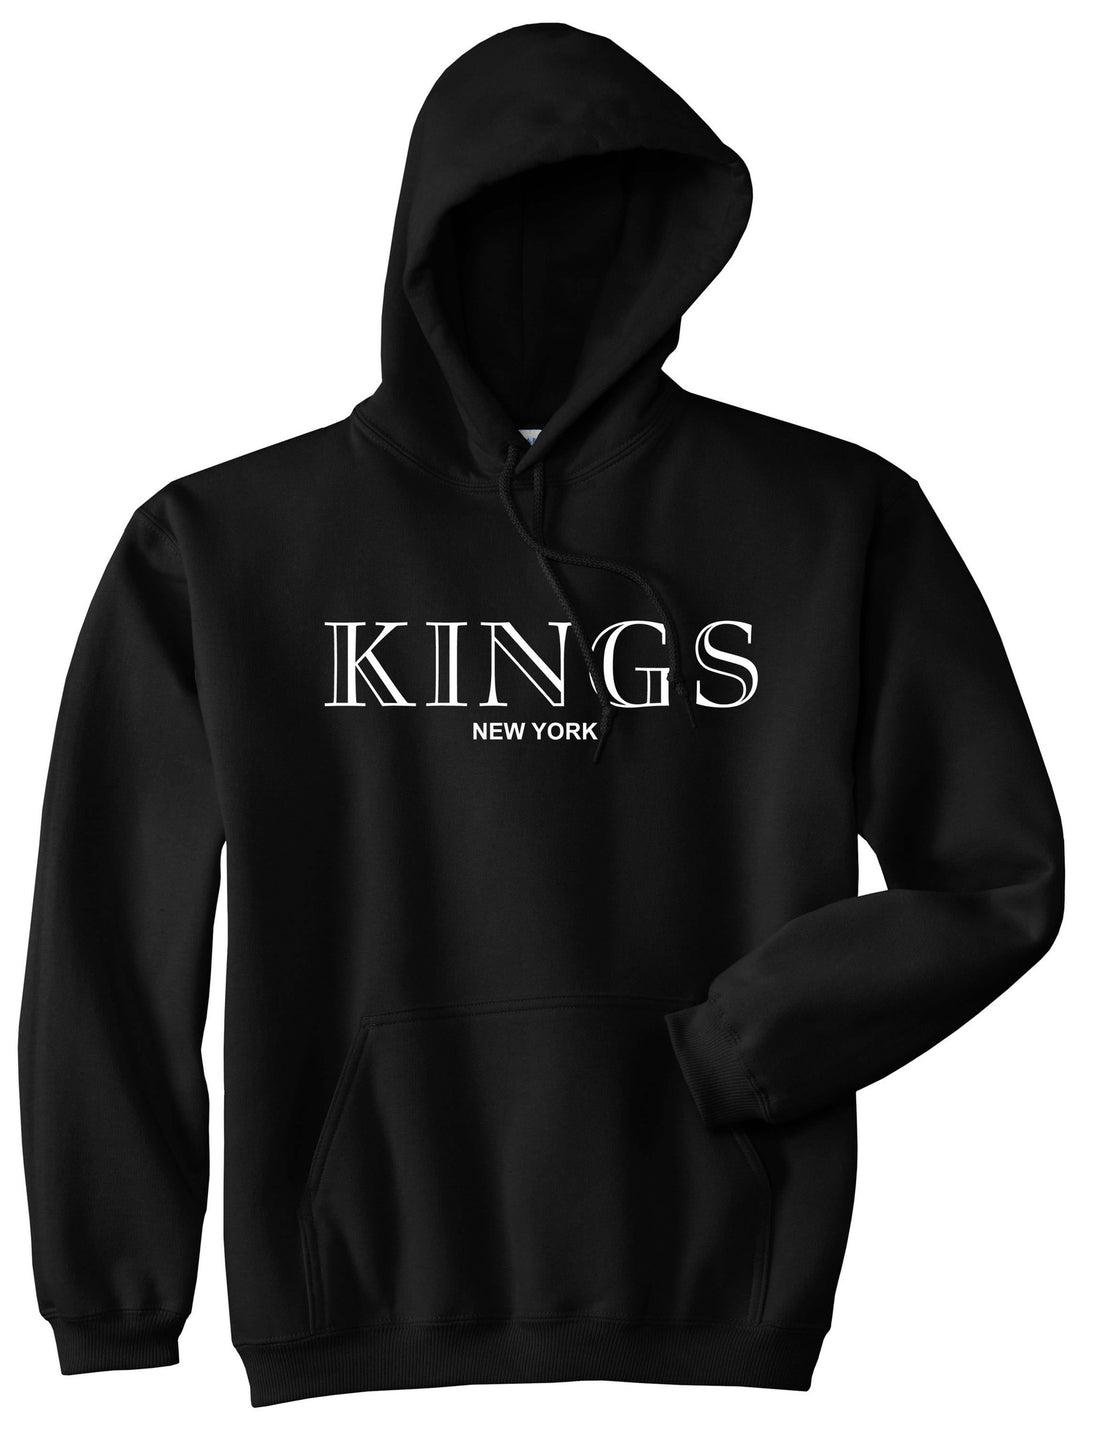 KINGS New York Fashion Pullover Hoodie Hoody in Black